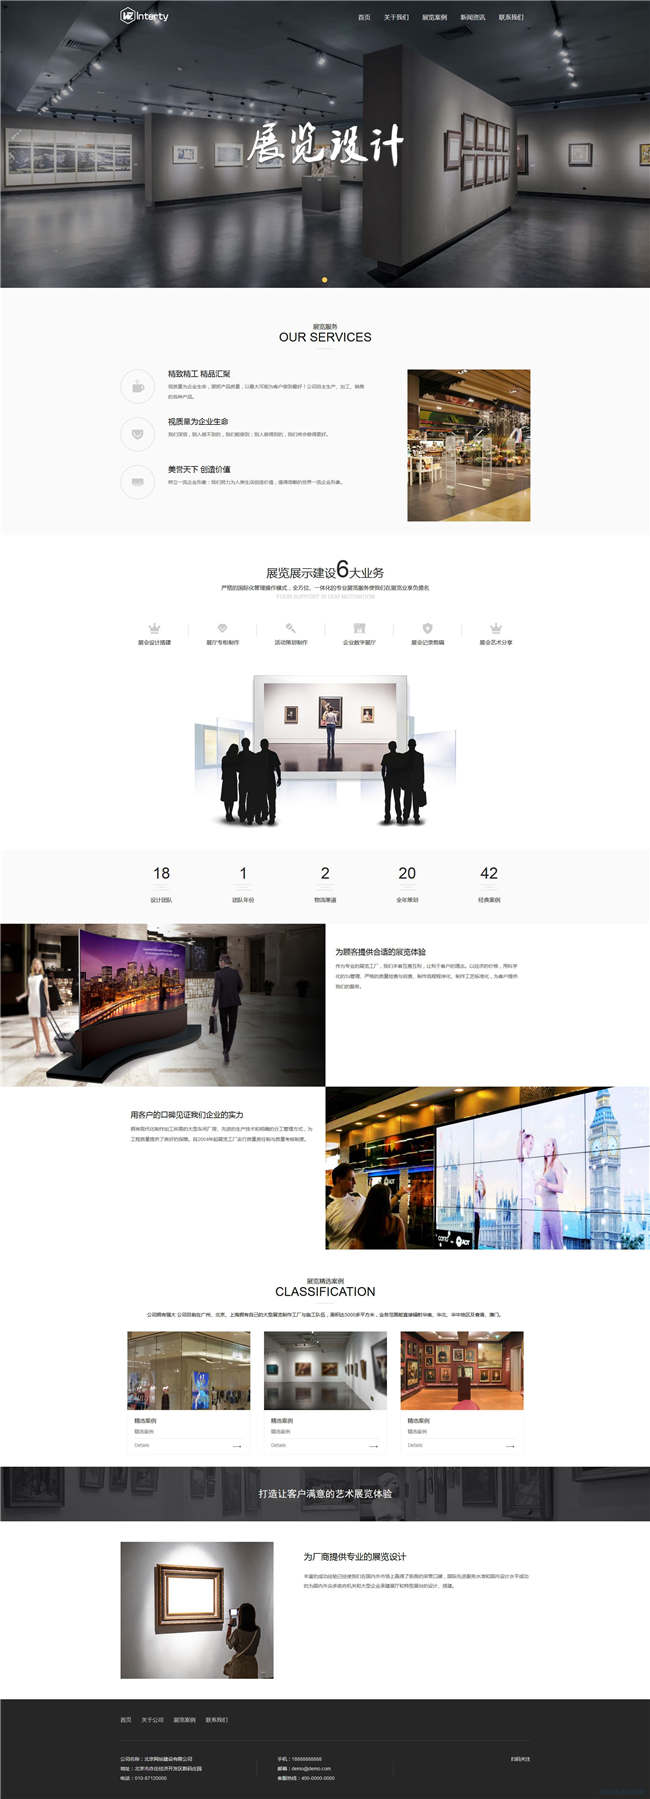 展厅会展广告传媒设计网站Wordpress模板(带手机站)预览图